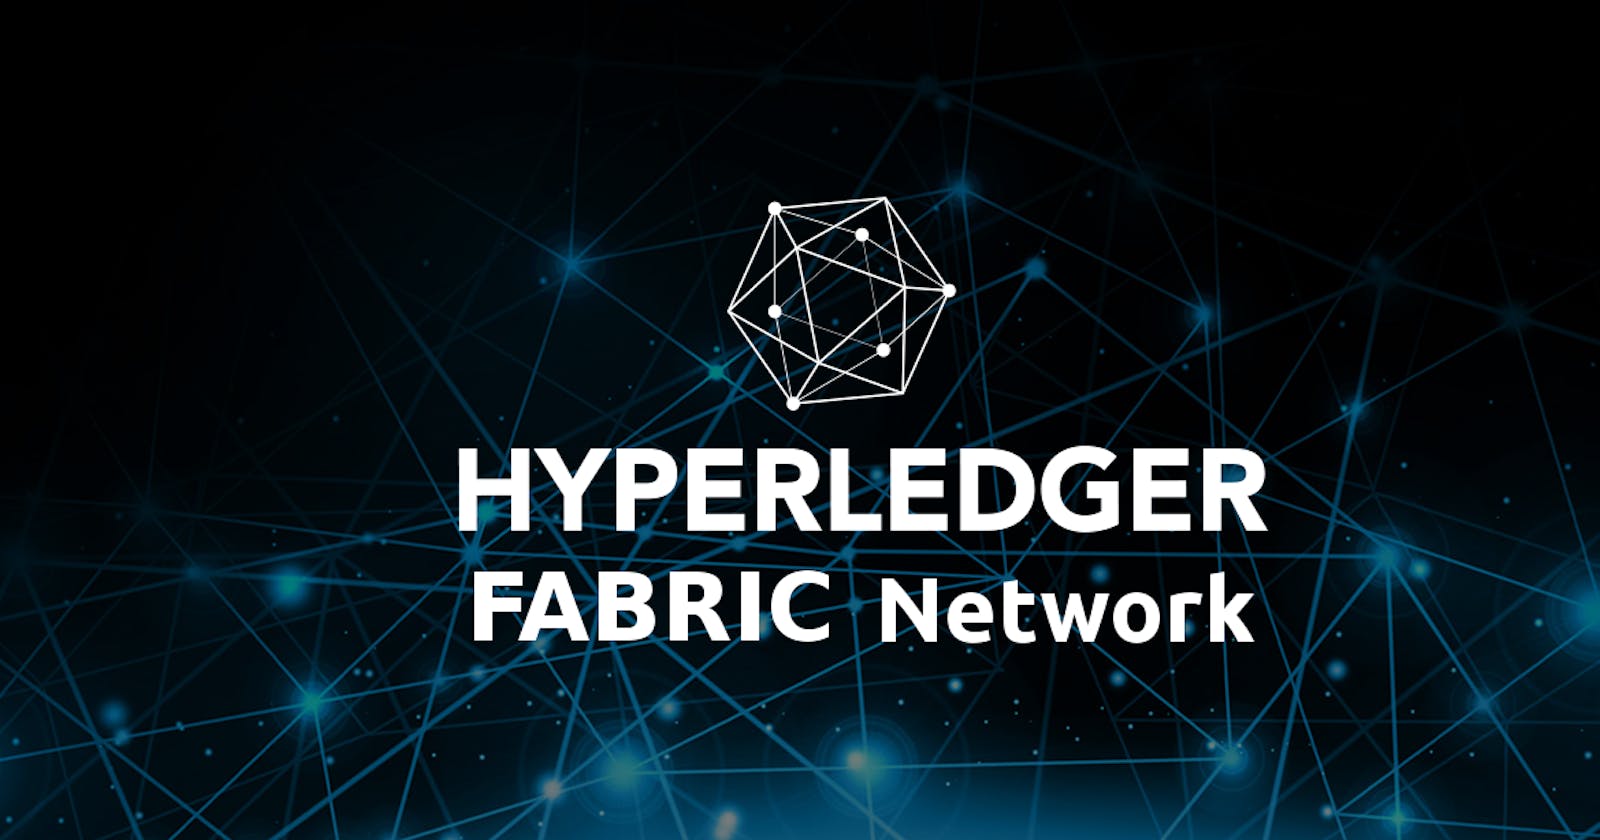 Hyperledger Fabric Network Setup from Scratch